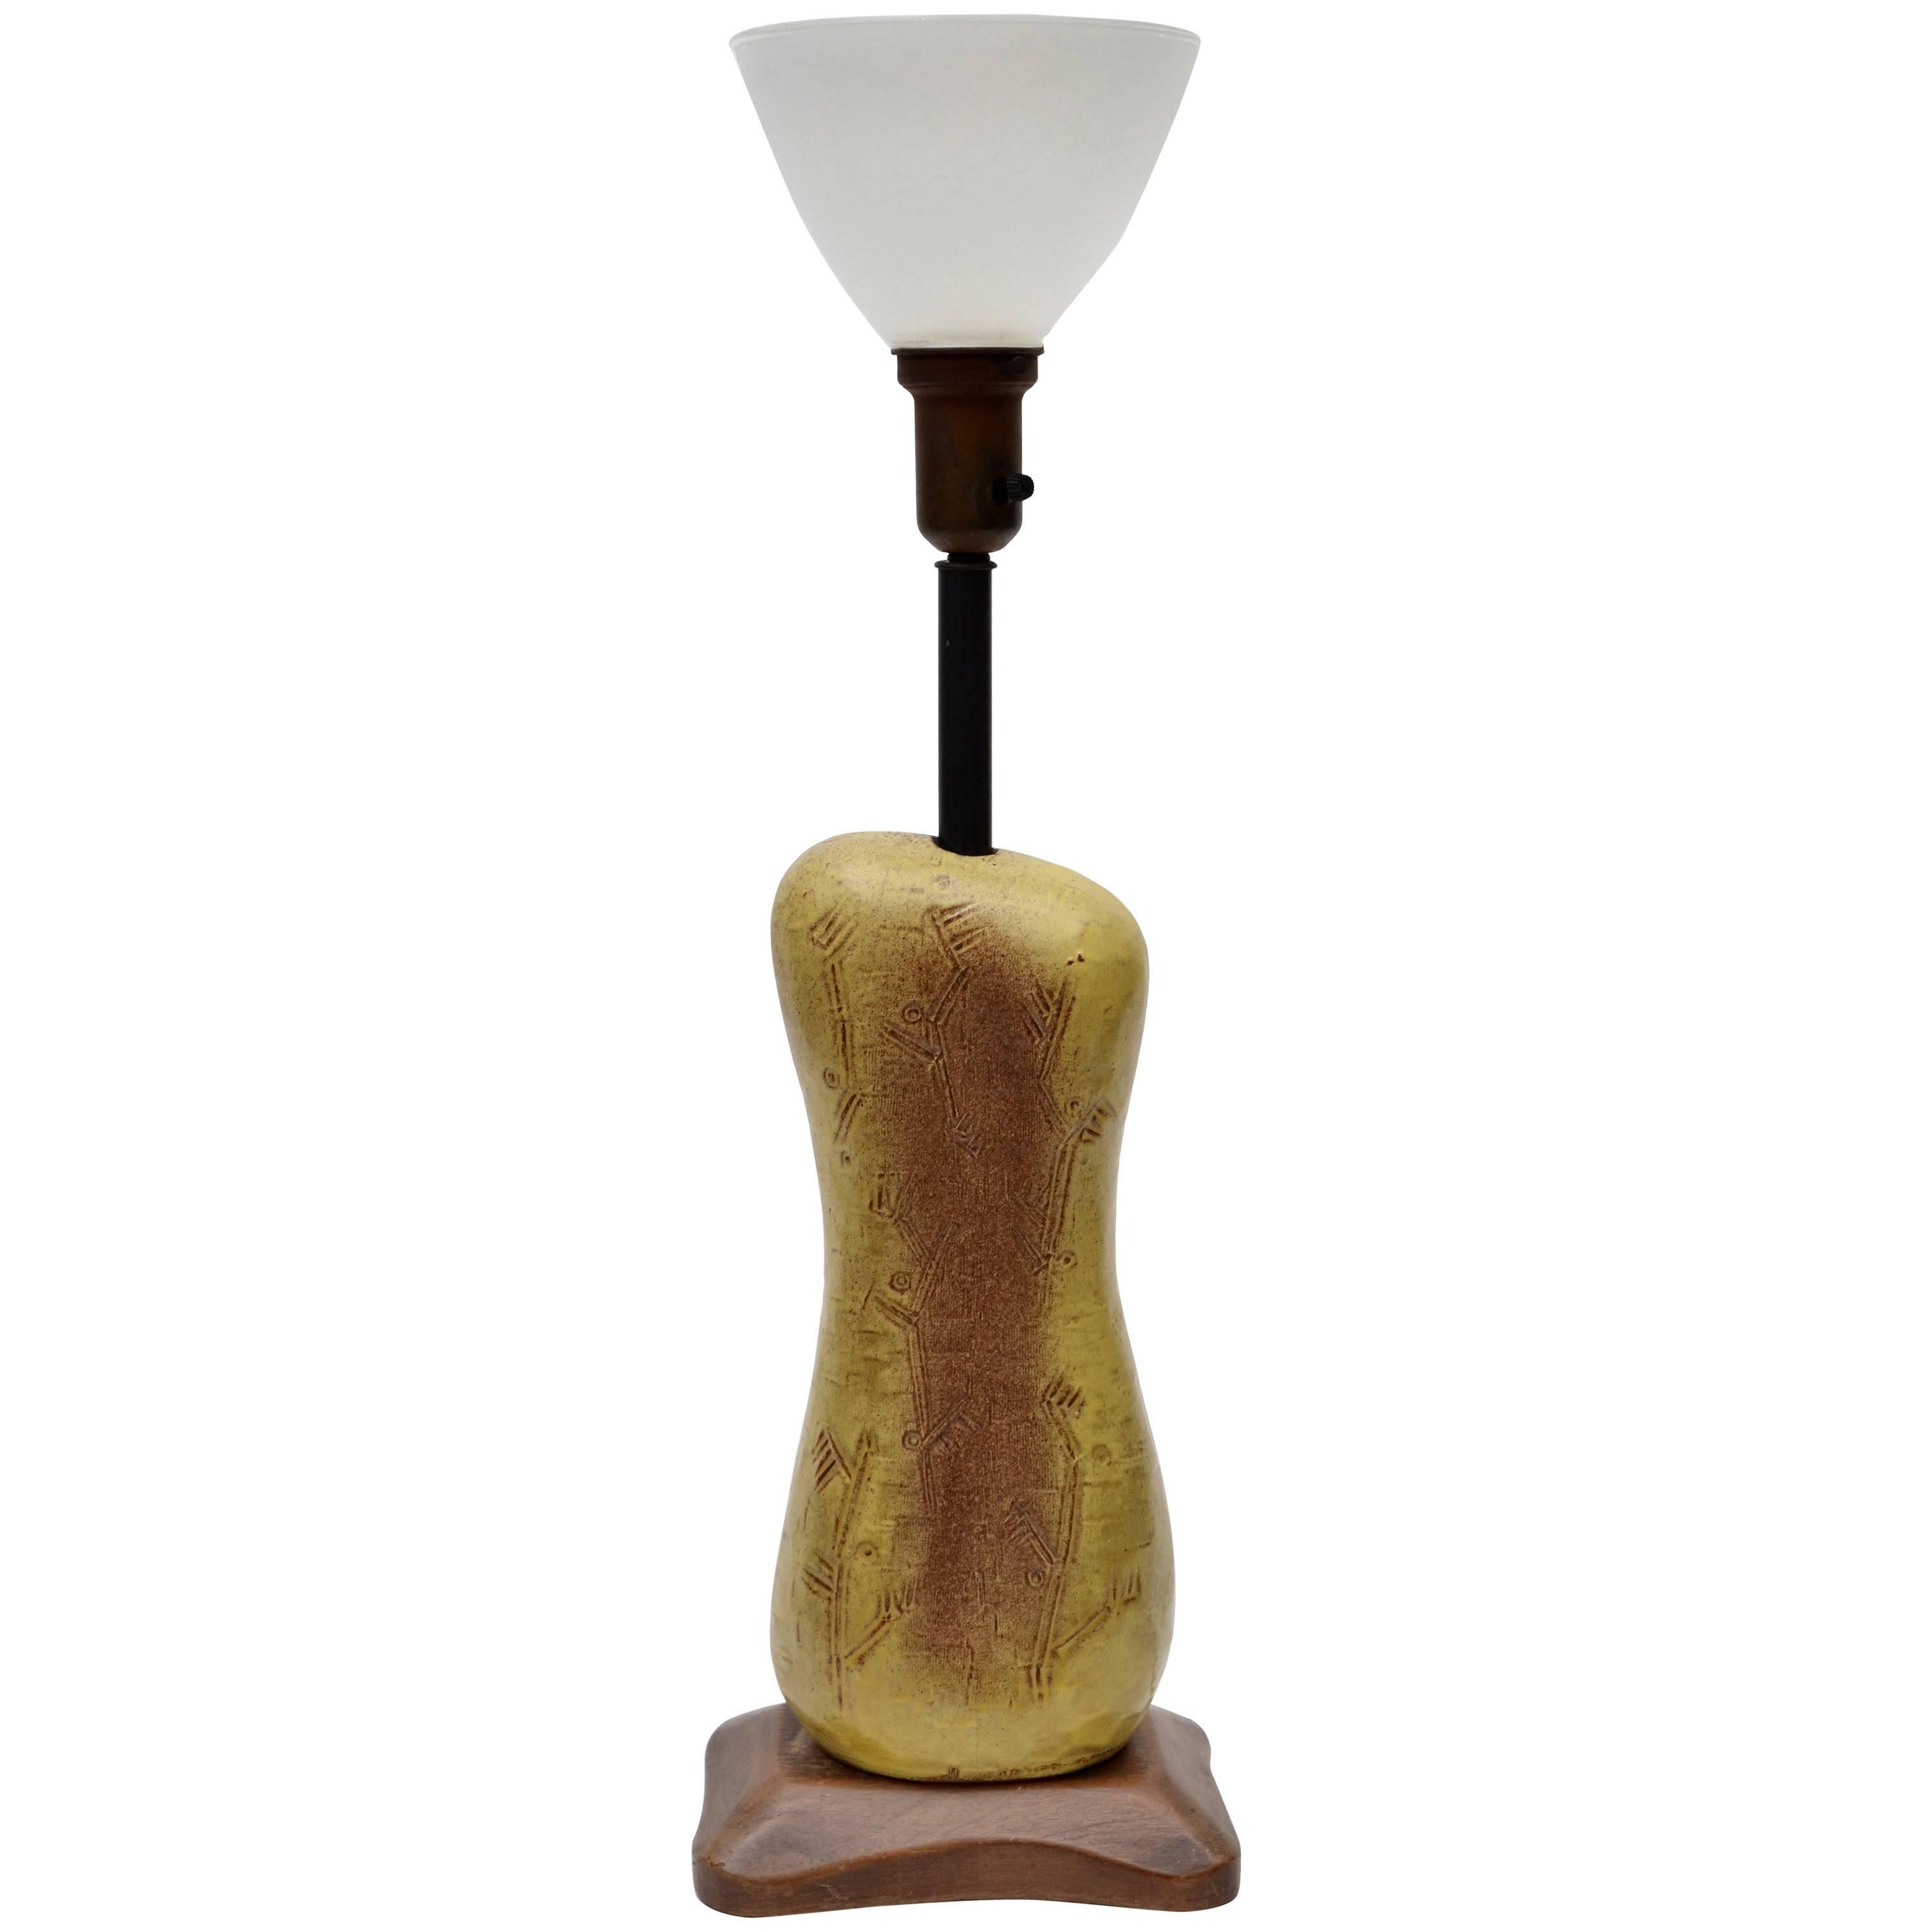 Lampe de bureau en céramique biomorphique de style mi-siècle moderne, signée Design Technics, Amérique